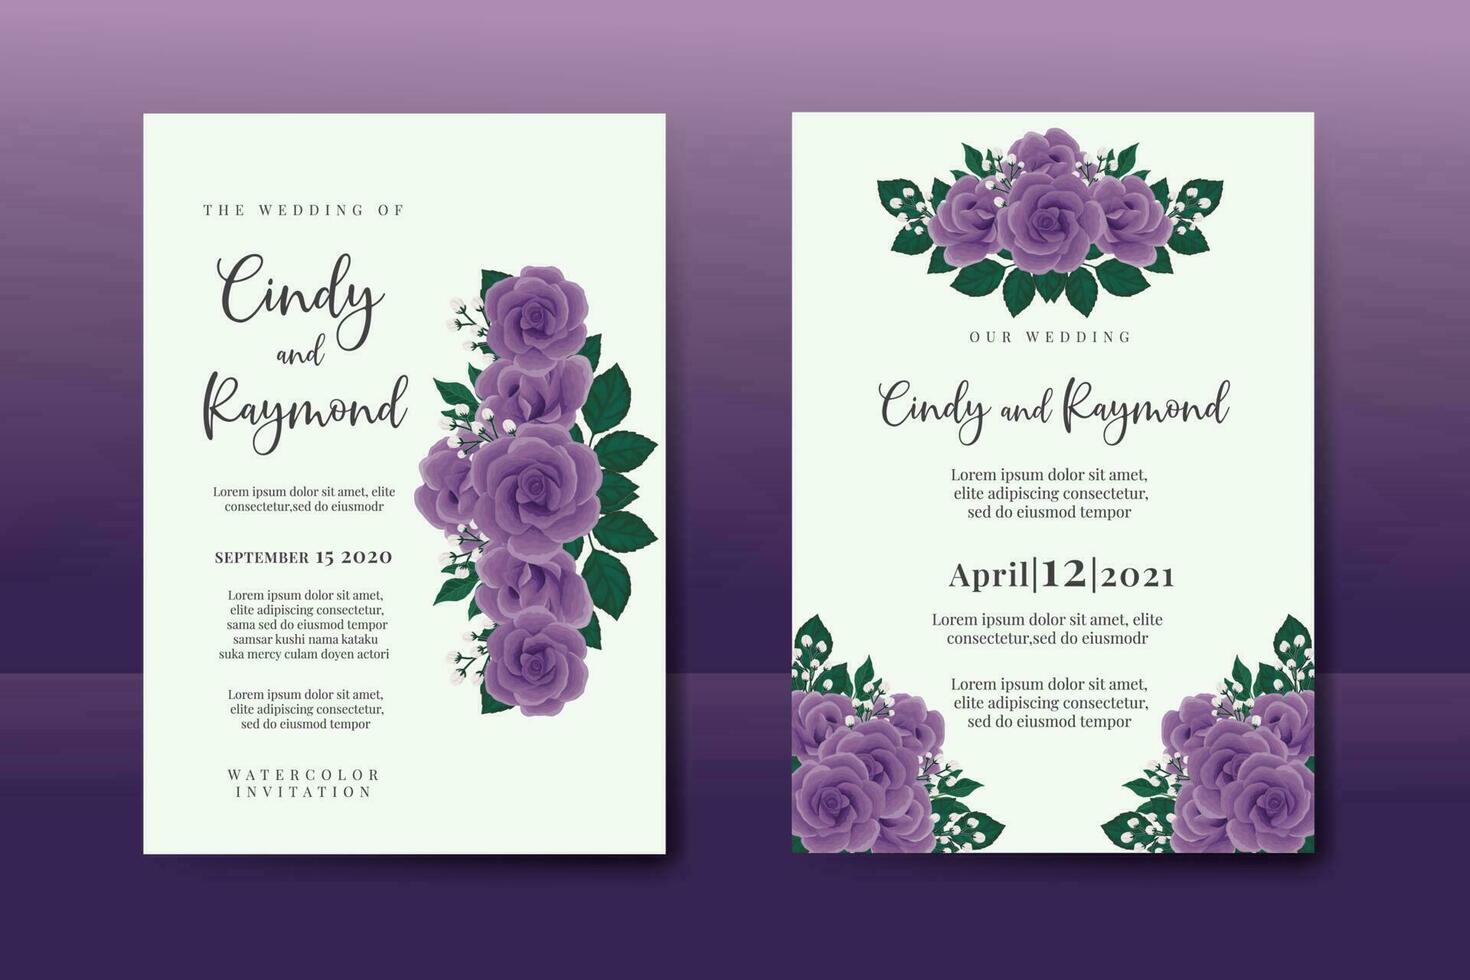 Hochzeit Einladung Rahmen Satz, Blumen- Aquarell Digital Hand gezeichnet lila Rose Blume Design Einladung Karte Vorlage vektor